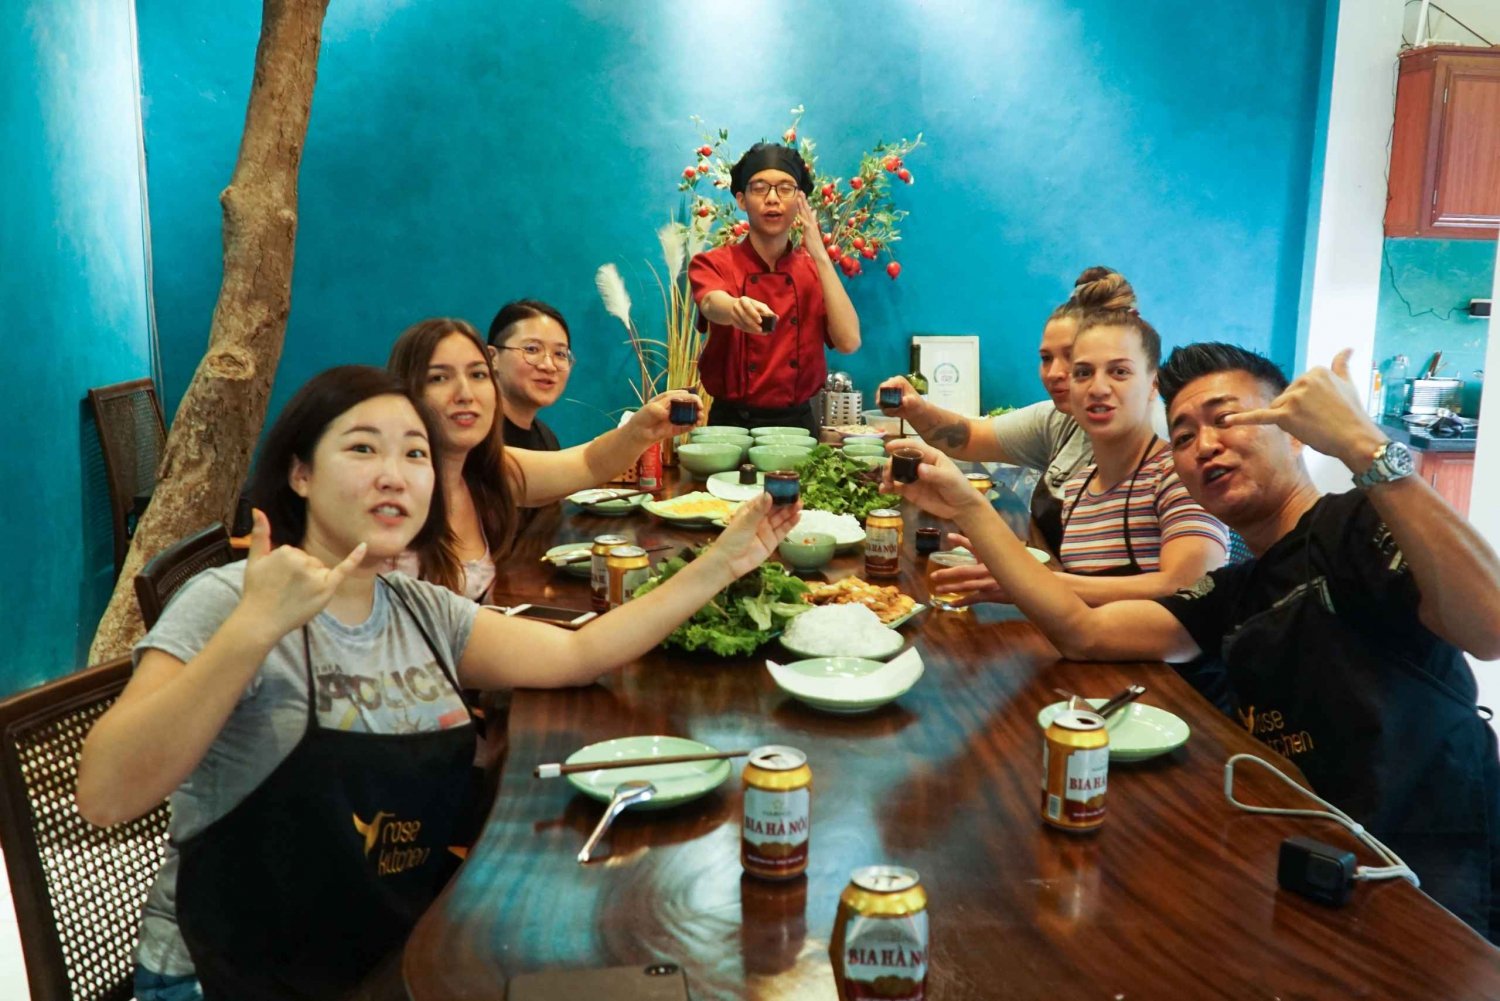 Hanoi: Vegaani vietnamilainen ruoanlaittokurssi paikallisessa huvilassa